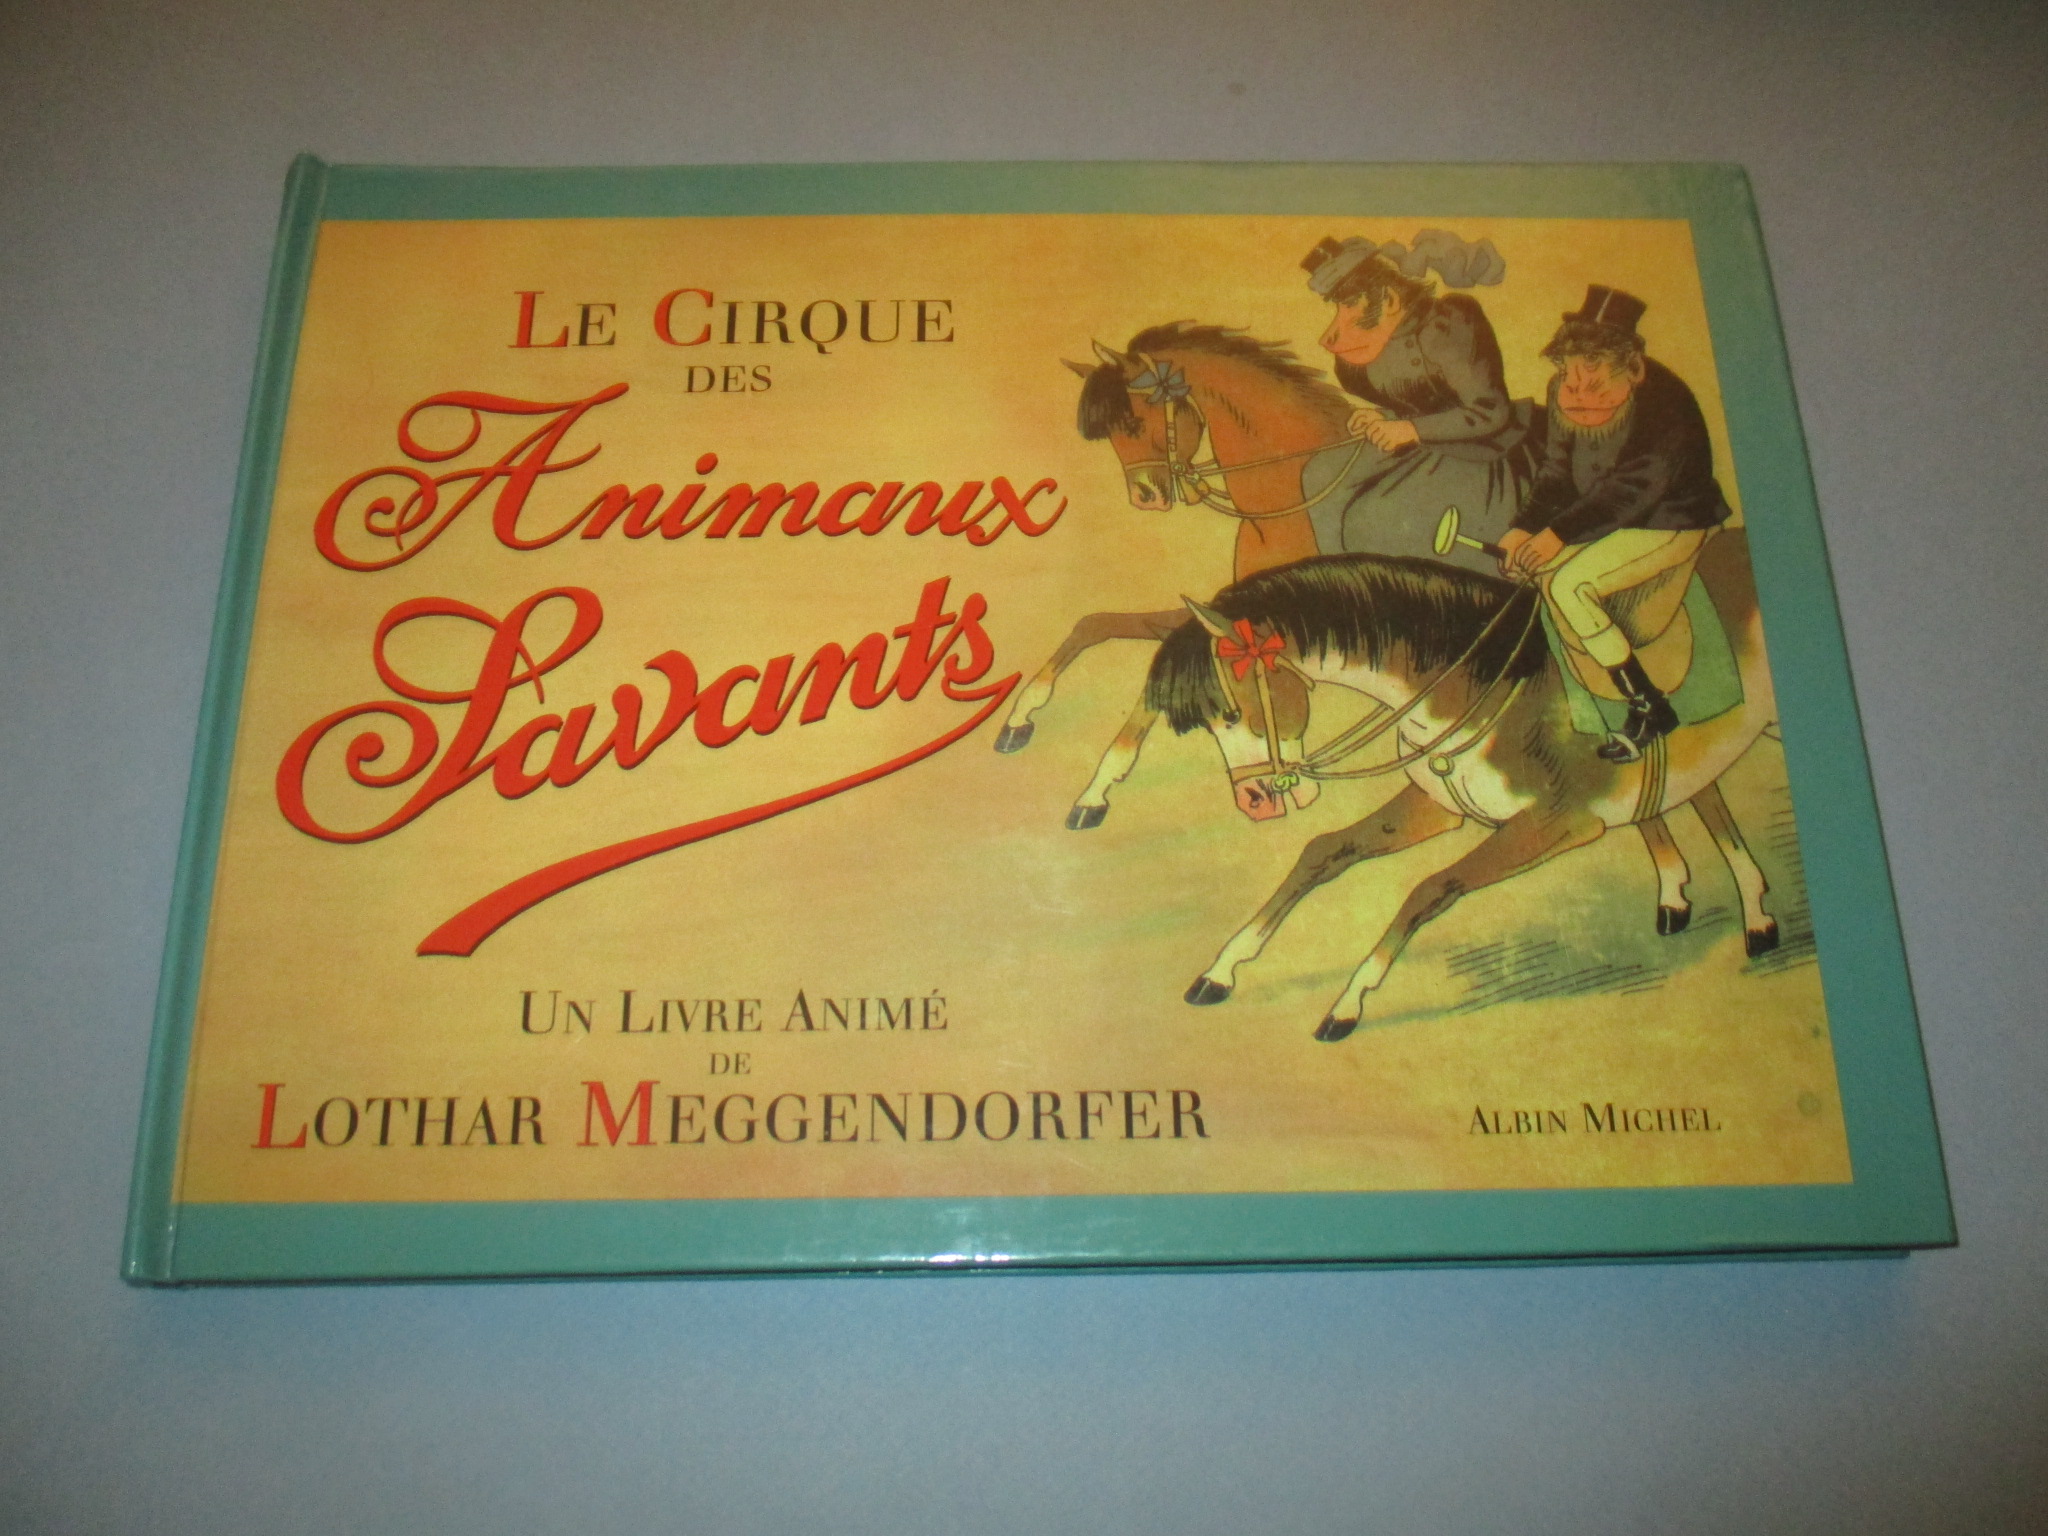 Le cirque des animaux savants, livre animé de Lothar Meggendorfer, Albin Michel